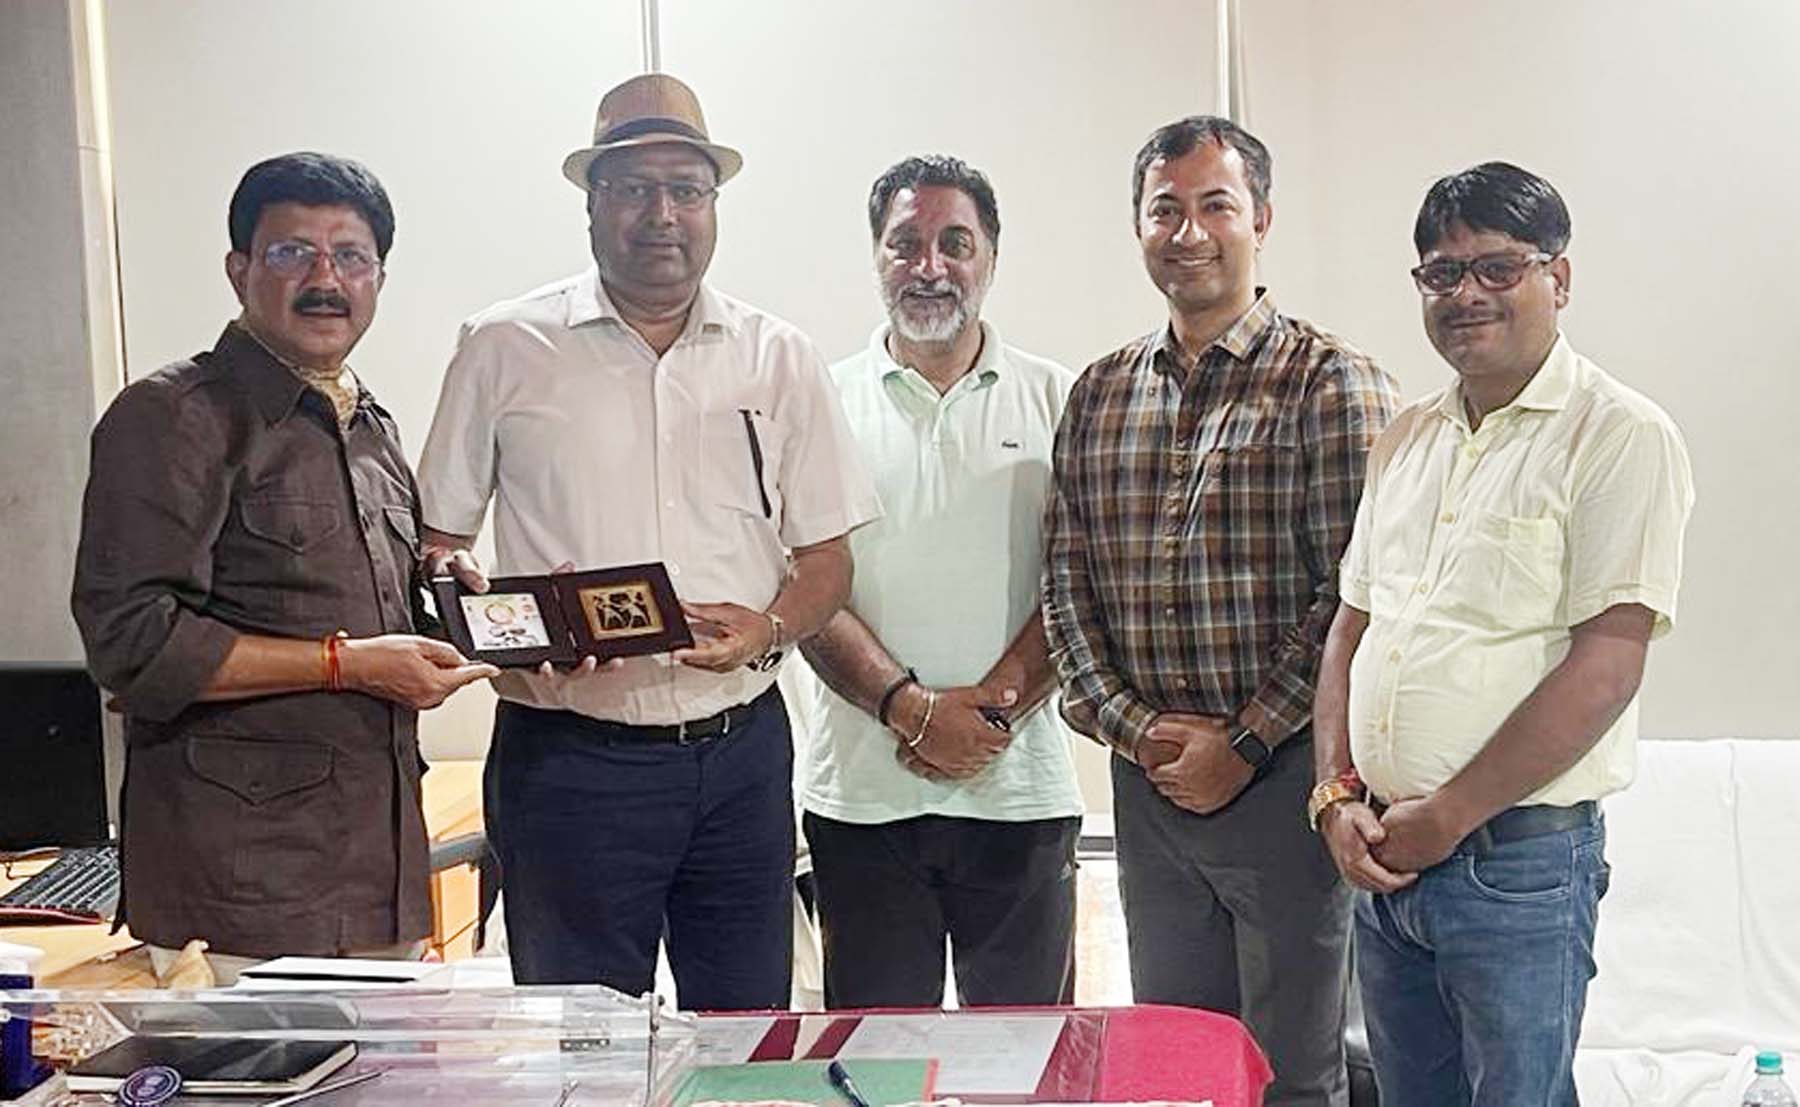 फोटो नंबर-03: पणजी गोवा में स्थित पर्यटन मंत्रालय भारत सरकार की मान्यता प्राप्त संस्थान नेशनल इंस्टिट्यूट ऑफ वाटर स्पोट्र्स के दौरे के दौरान गुरुग्राम विवि के कुलपति वहां के अधिकारियों के साथ। 